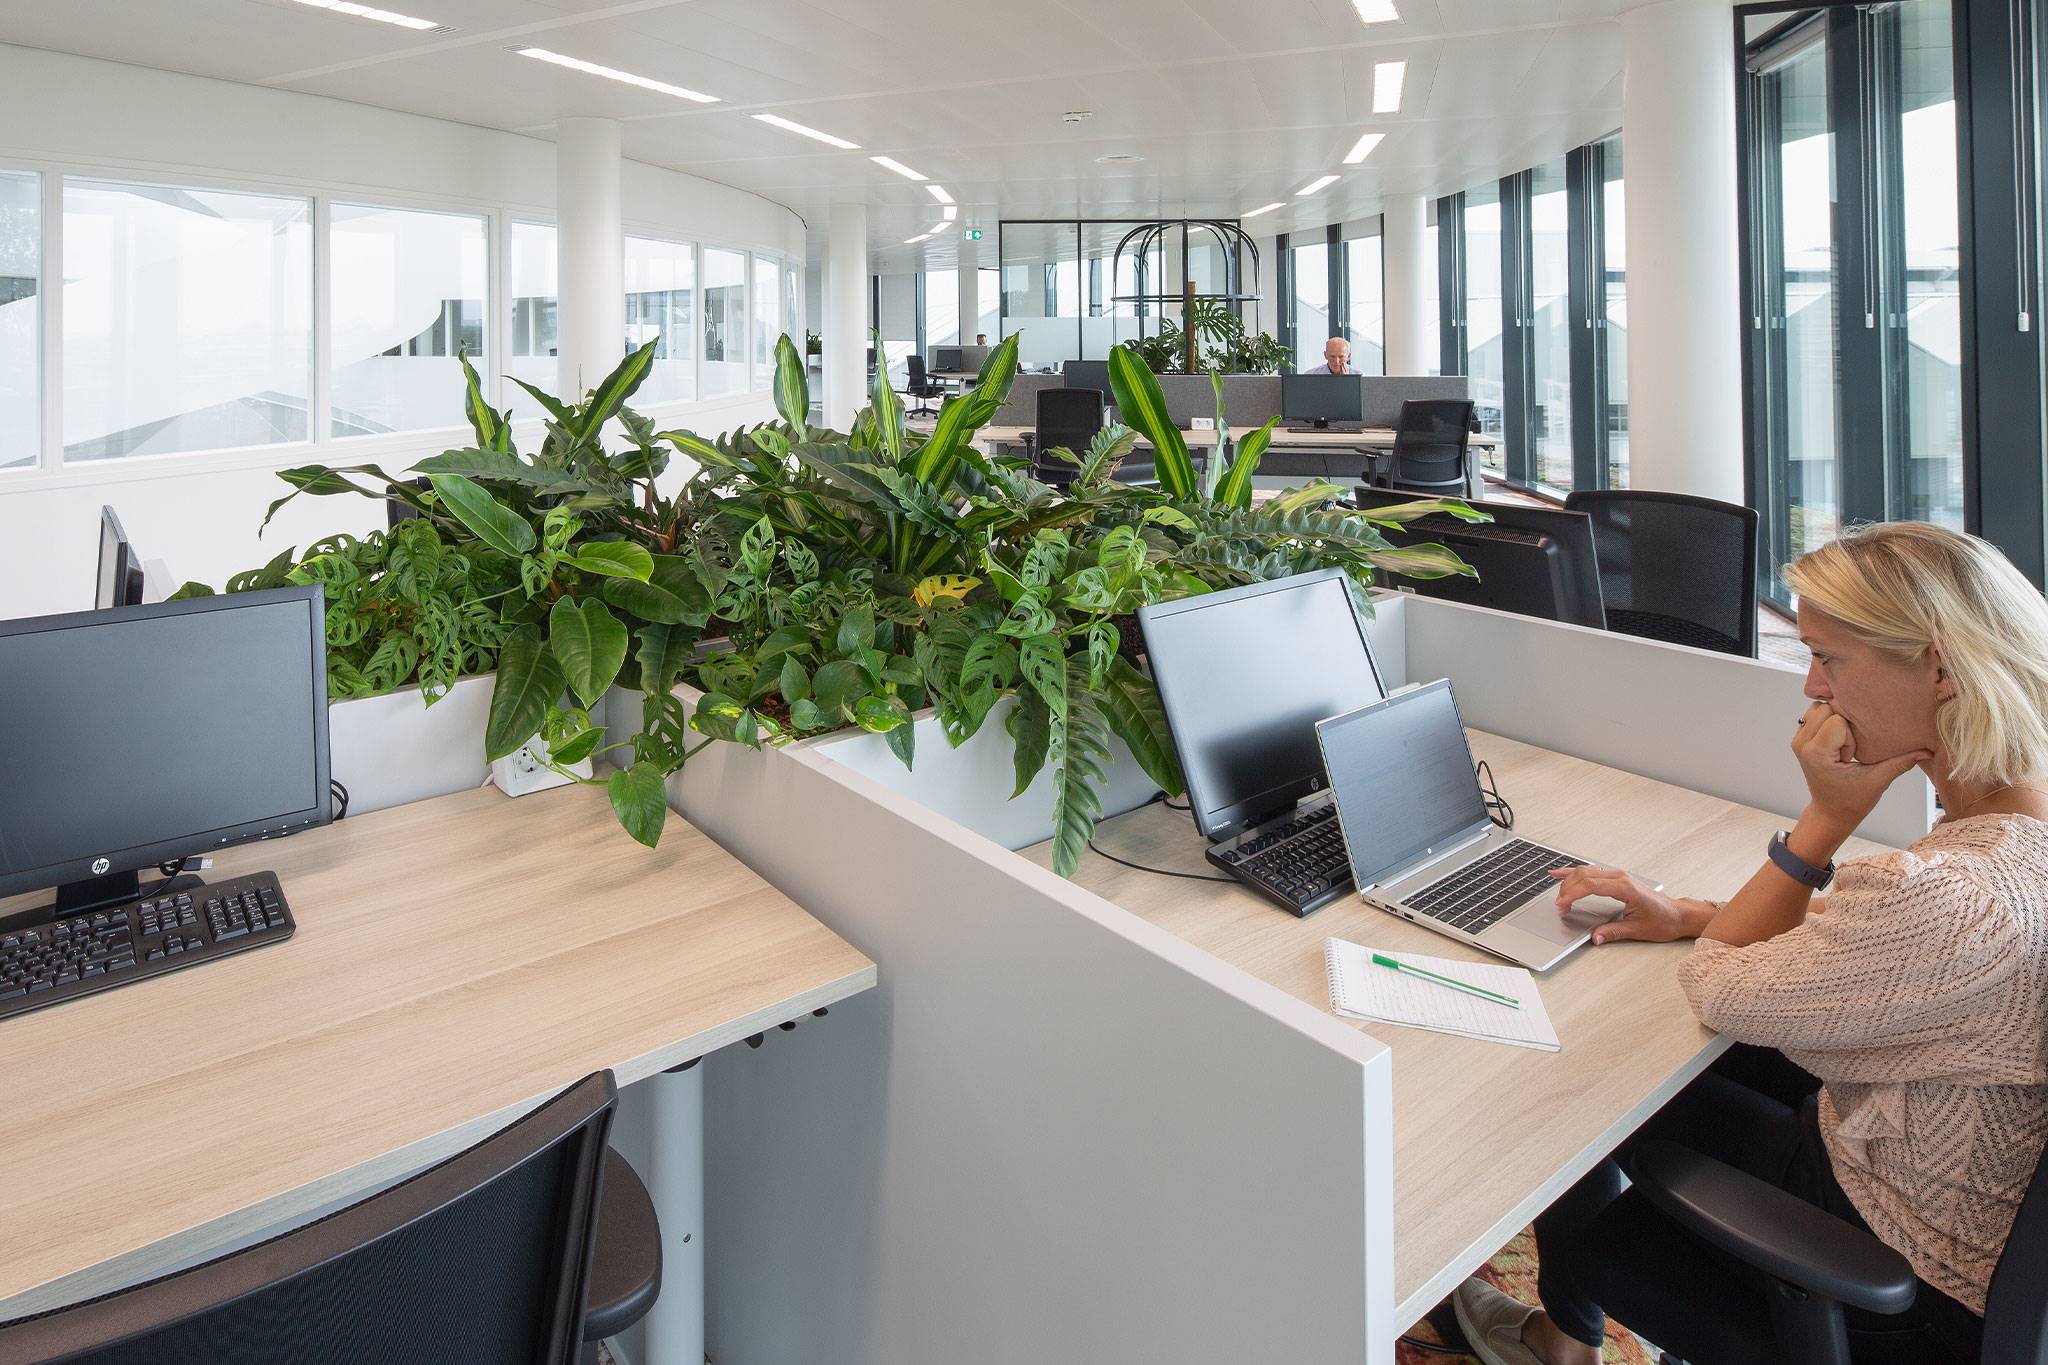 Royal Floraholland, Aalsmeer - Wij brachten groen aan in dit kantoor met als achterliggende gedachte om de productiviteit te verhogen